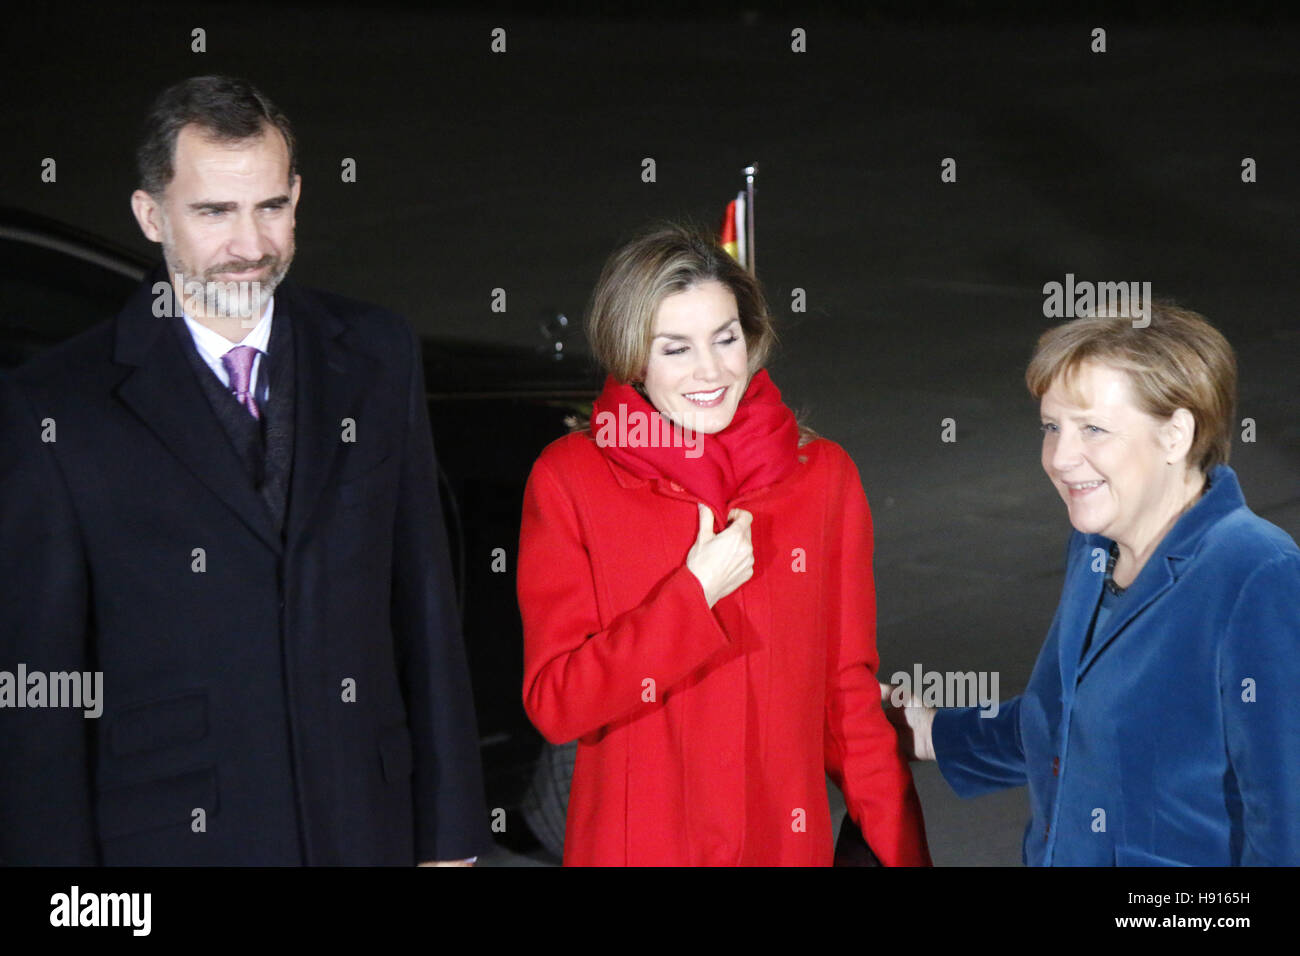 Koenig Felipe VI, Koenigin Letizia von Spanien, BKin Angela Merkel - Treffen der dt. Bundeskanzlerin mit dem spanischen Koenigspaar, Bundeskanzleramt, Stock Photo